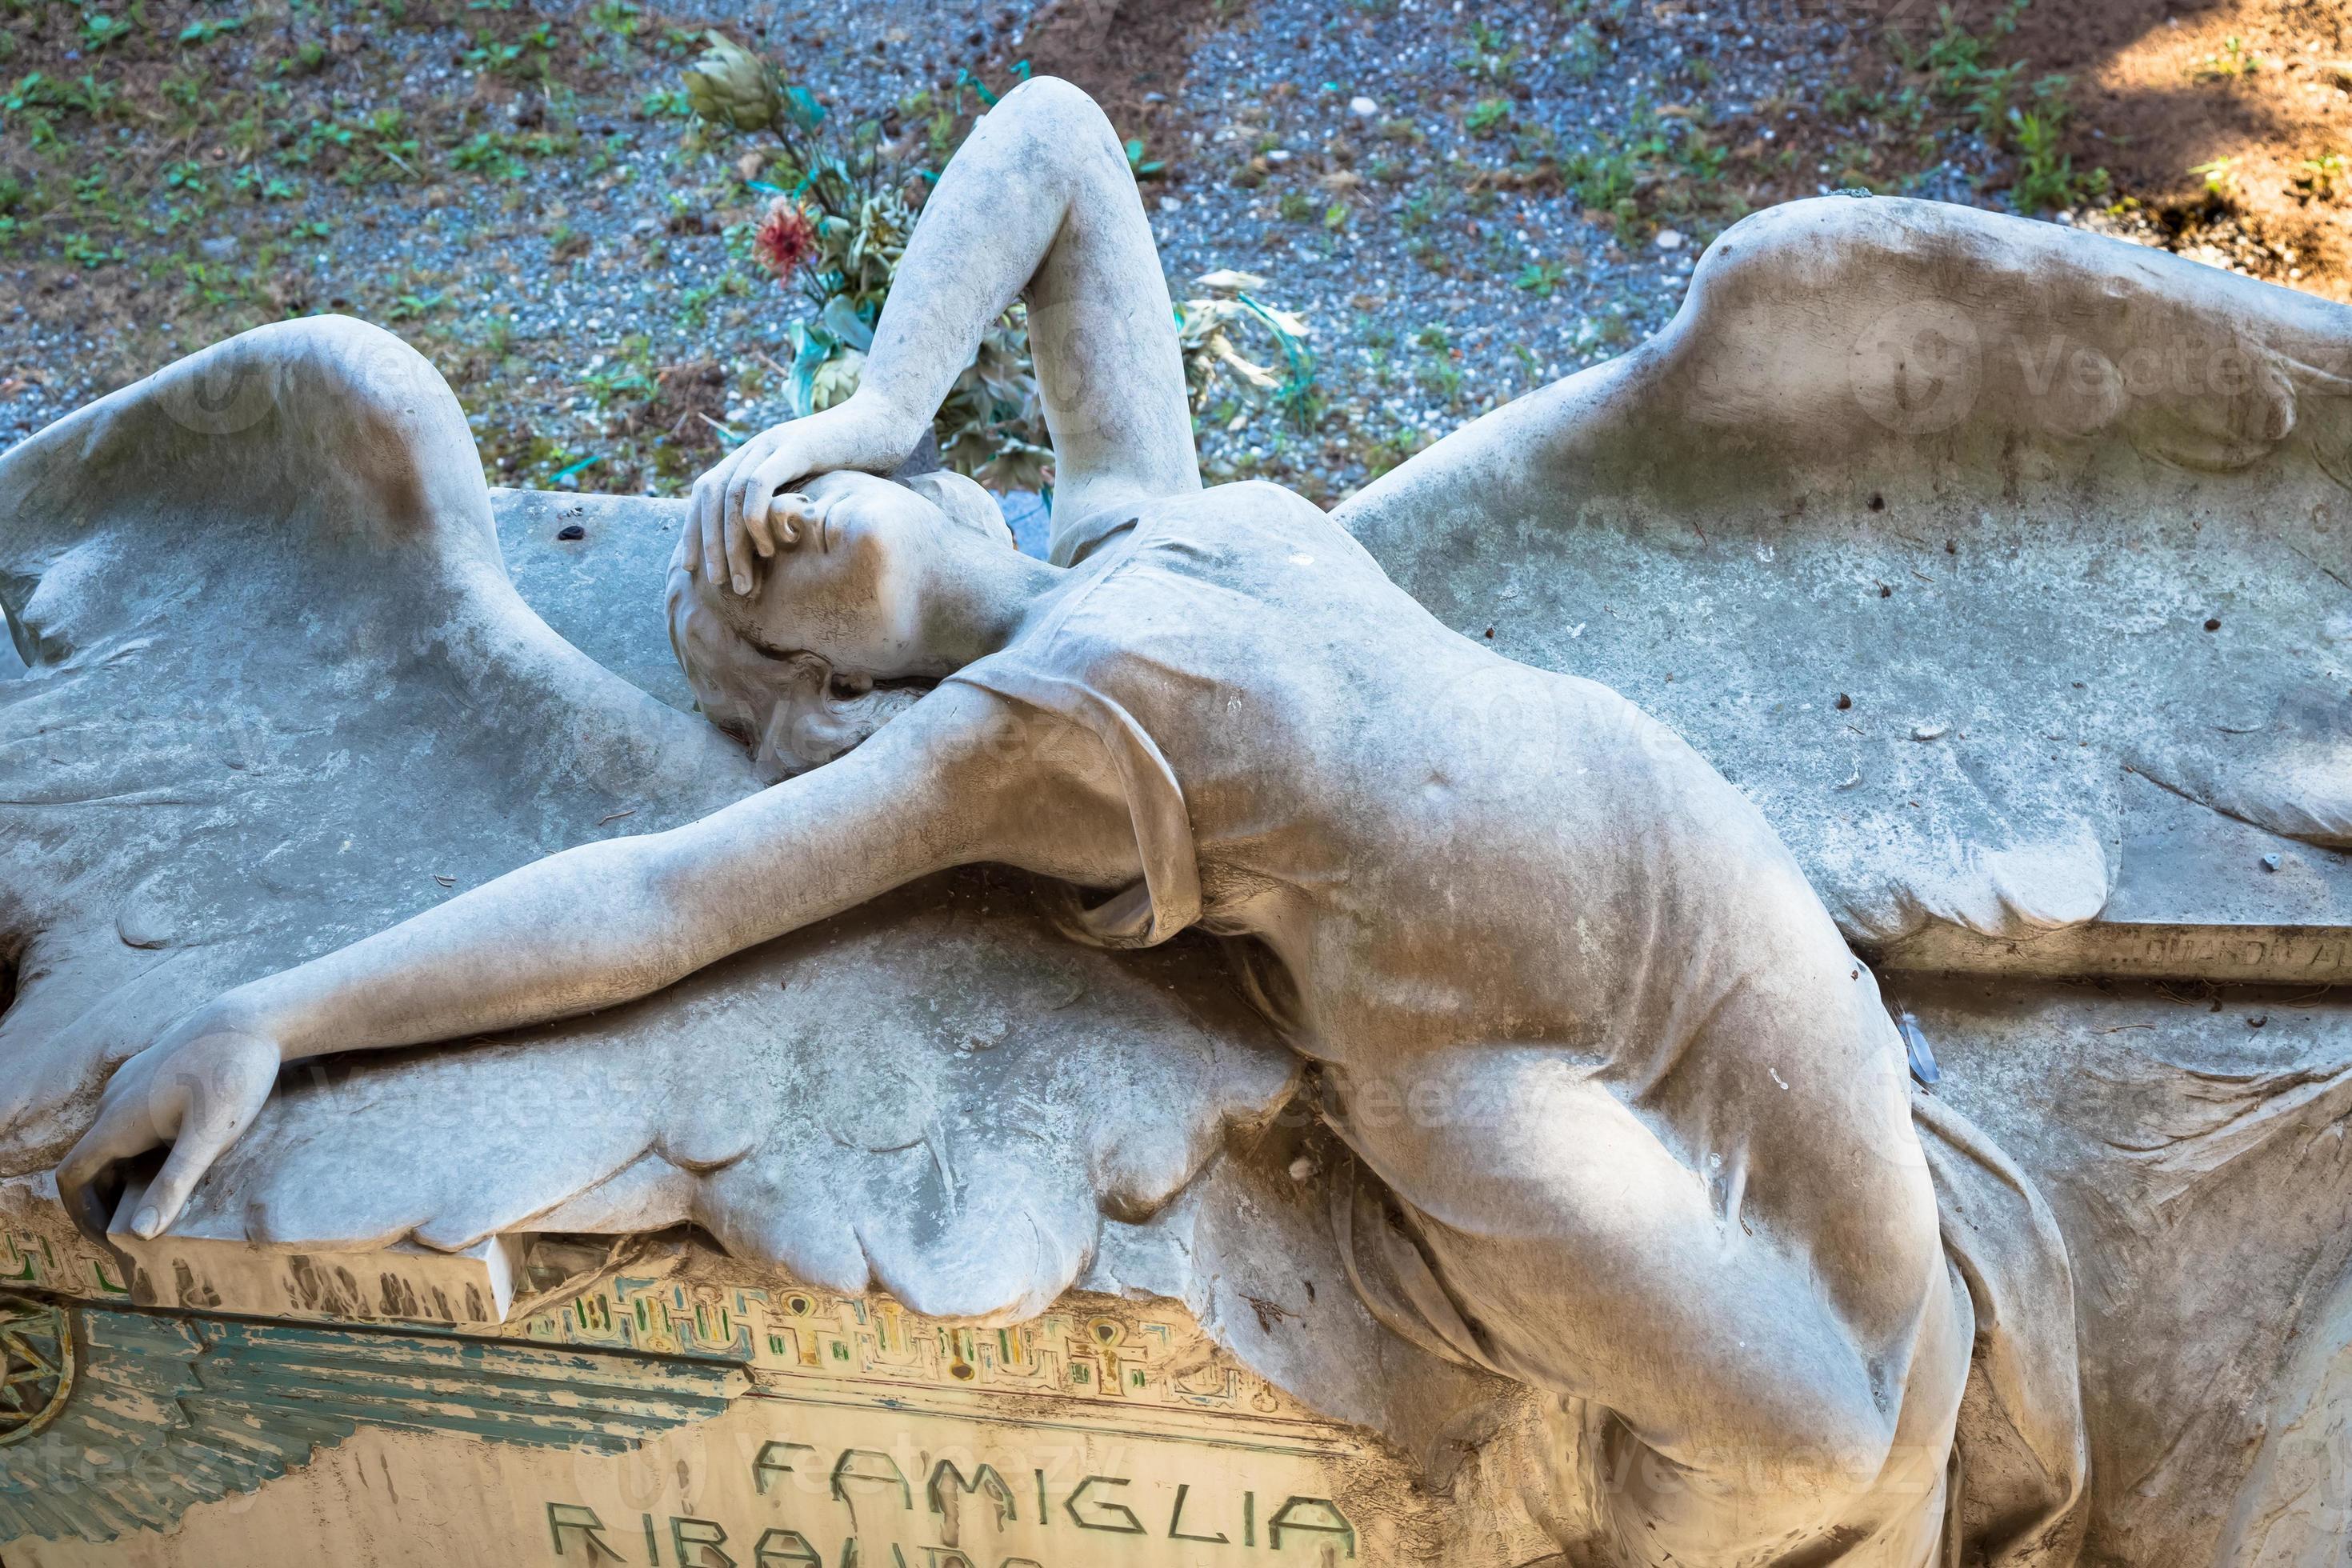 Ange Triste Dans Le Vieux Cimetière. Sculpture D'ange Sur La Tombe